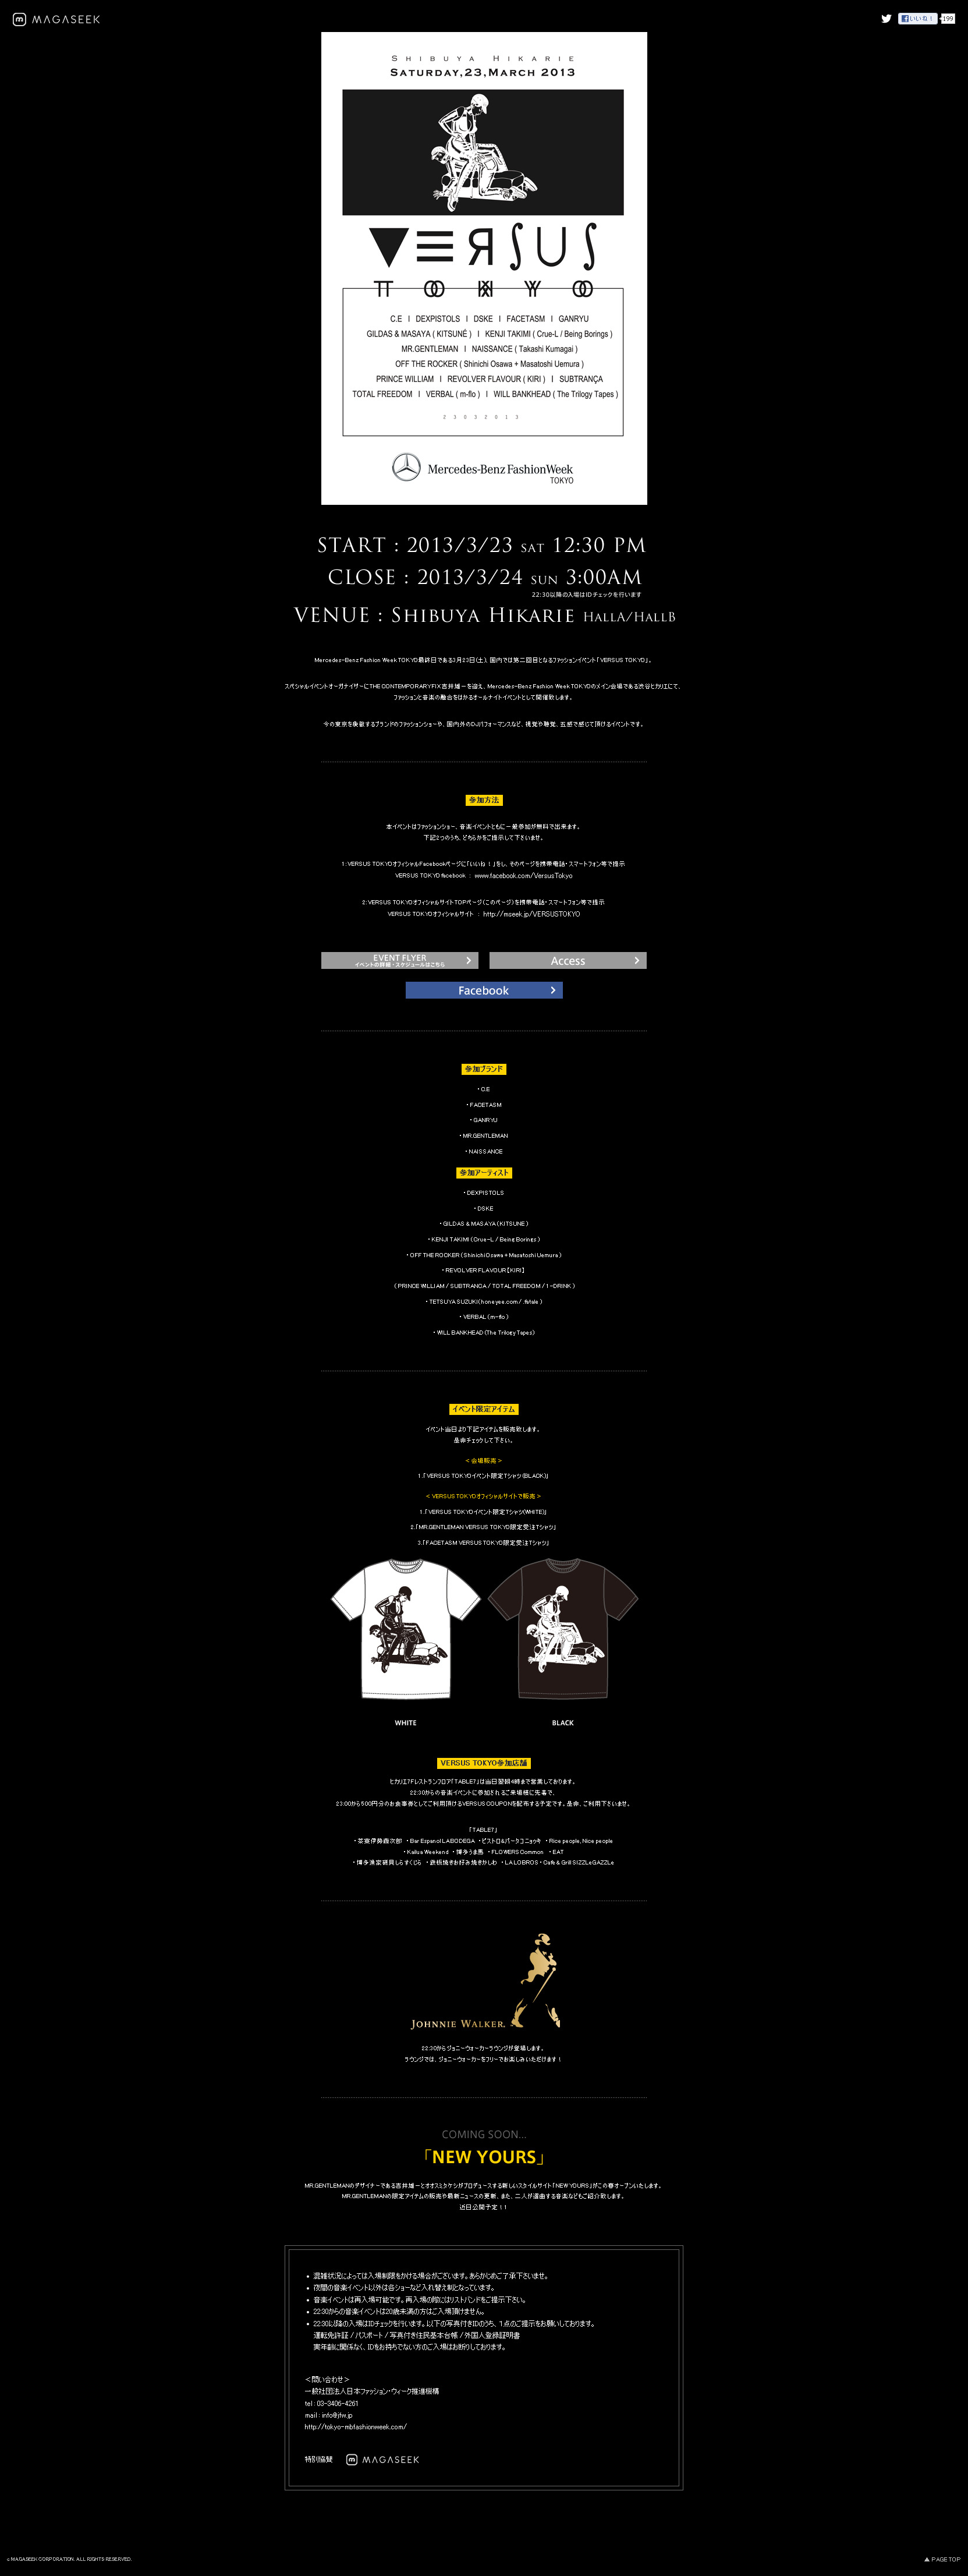 マガシーク メルセデス ベンツ ファッション ウィーク公式イベント Versus Tokyo へ特別協賛 限定アイテムをオフィシャルサイトで同時公開 マガシーク株式会社のプレスリリース